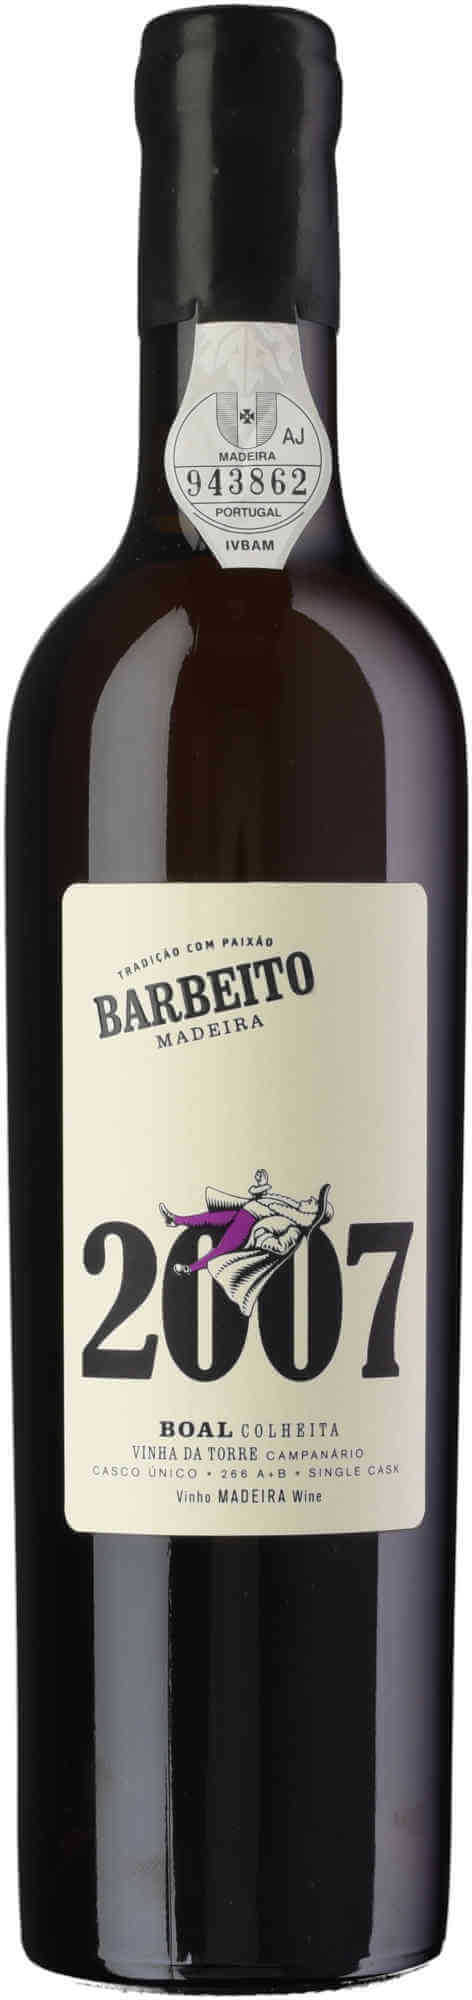 Barbeito-Boal-Colheita-2007